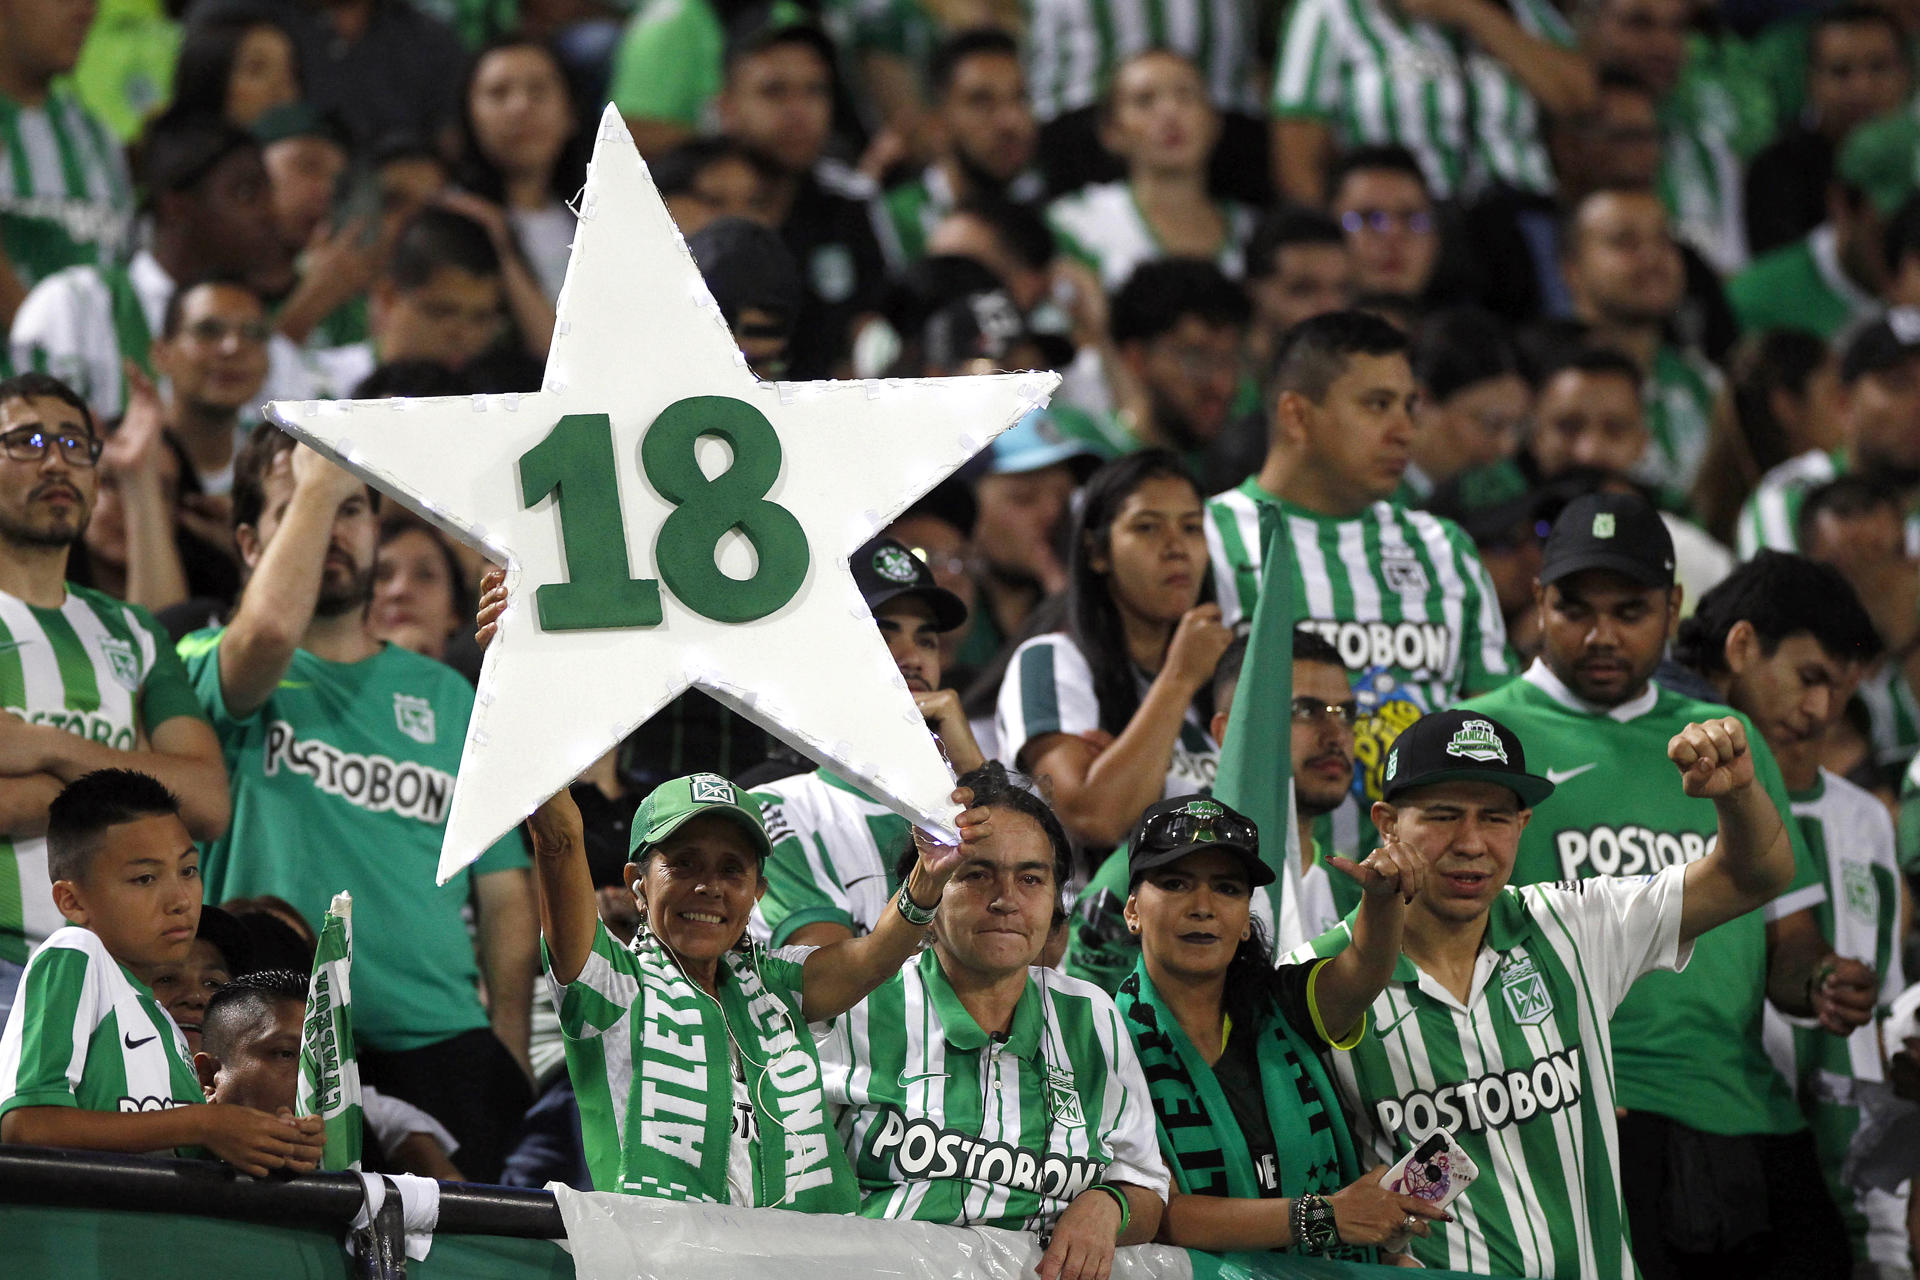 Torcida do Atlético Nacional sonha com o 18º título do Campeonato - Luis Eduardo Noriega / EFE